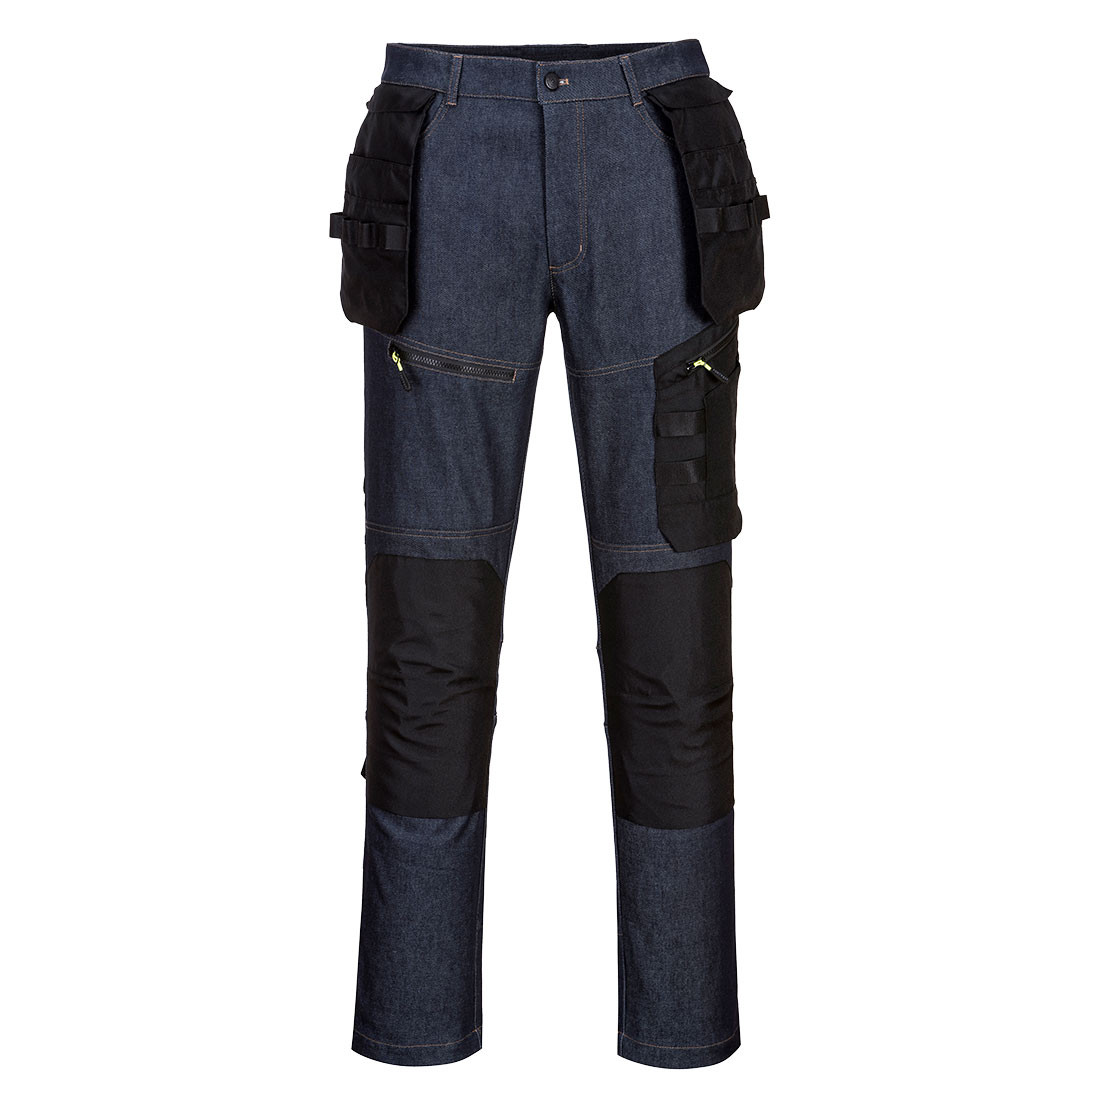 Pantalón KX3 Holster Denim - Ropa de protección